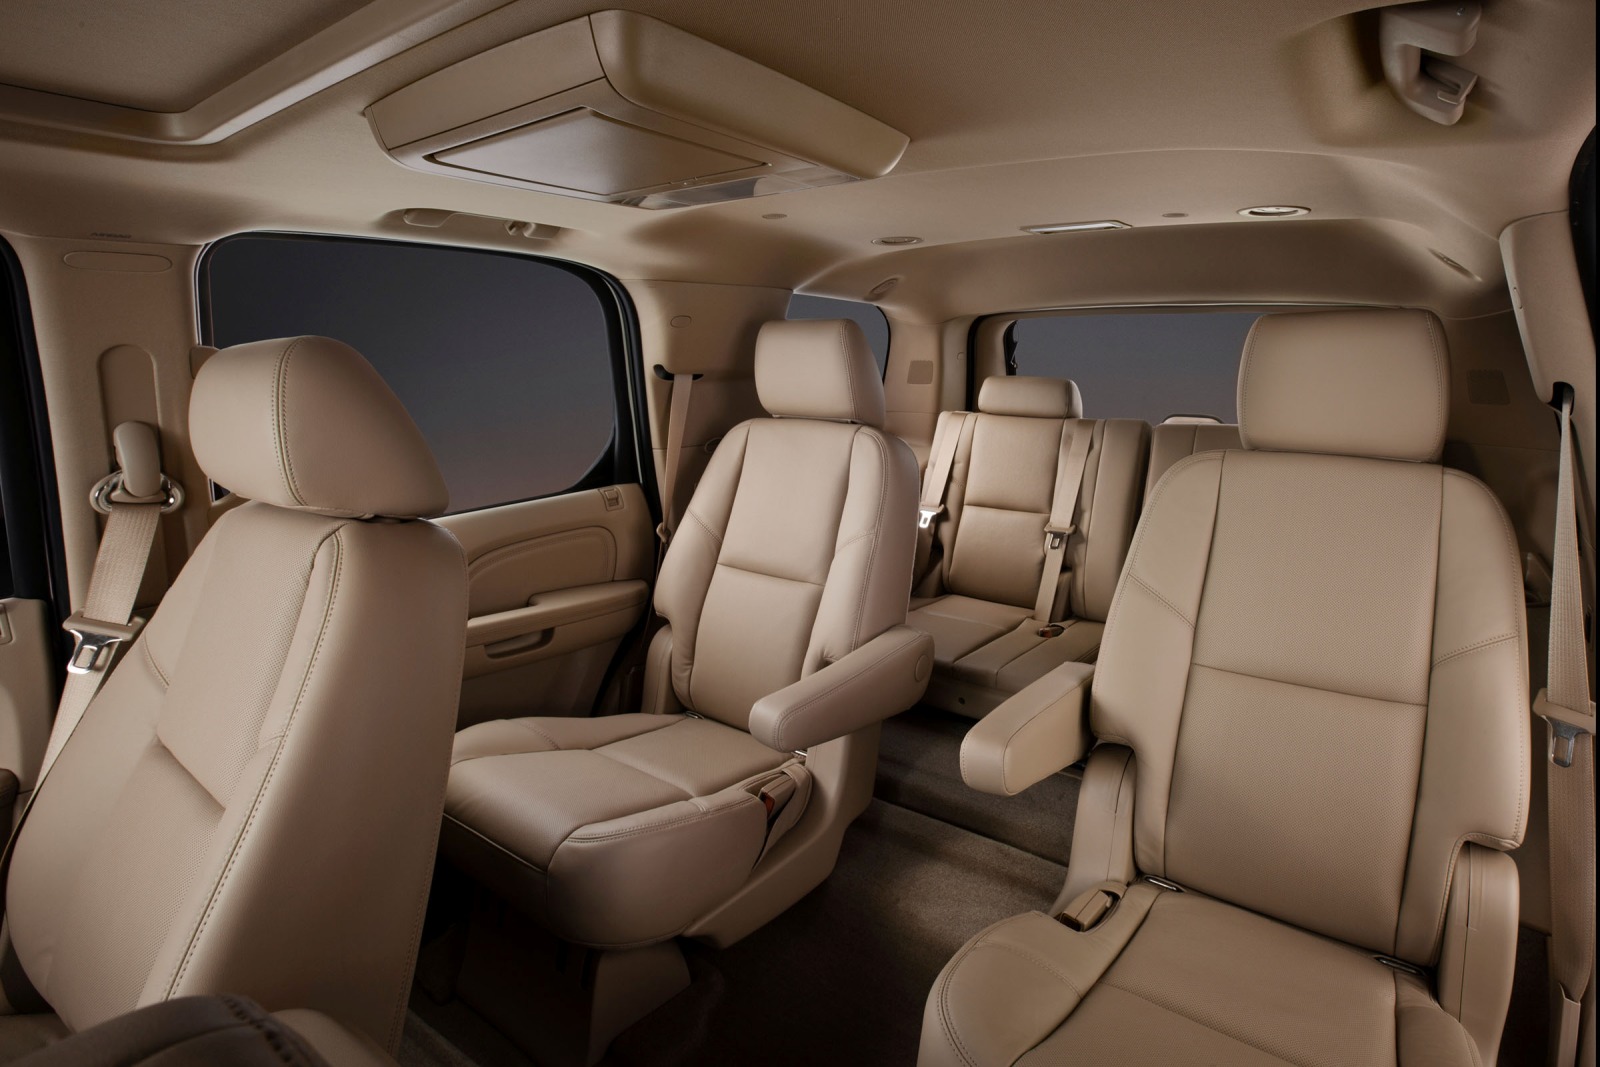 2012 Cadillac Escalade 4dr SUV Rear Interior